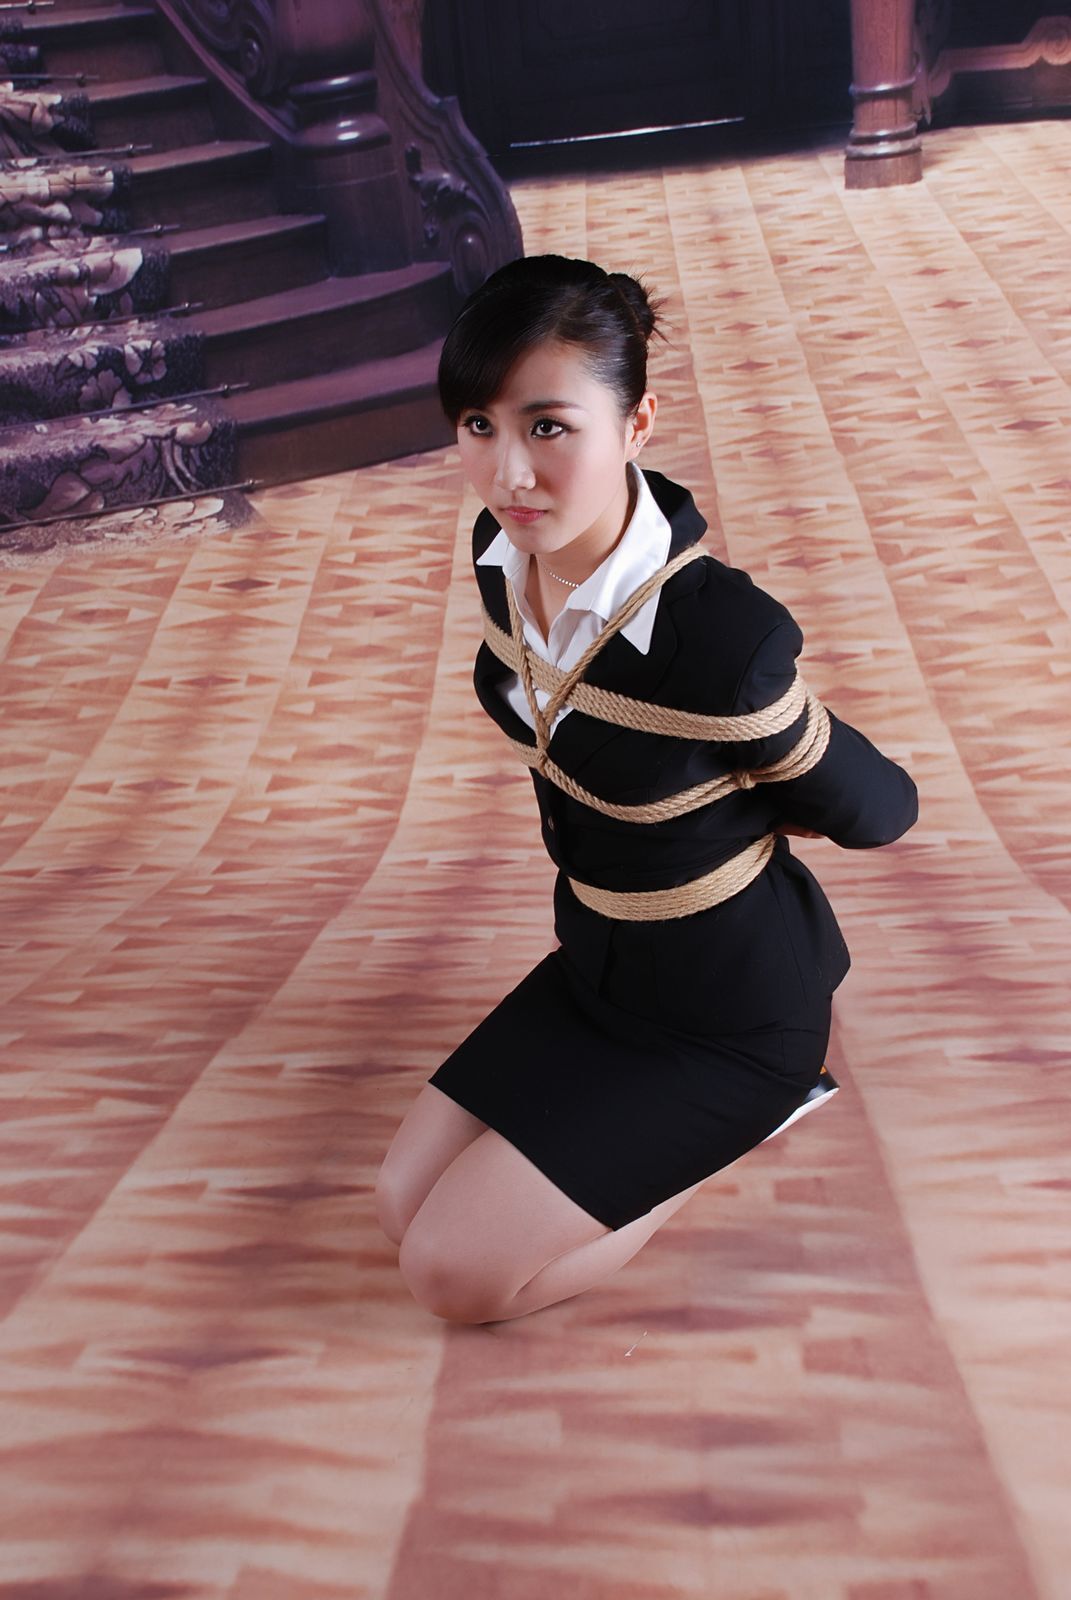 [shenyiyuan] 2010.04.01 no.007 model Tiantian